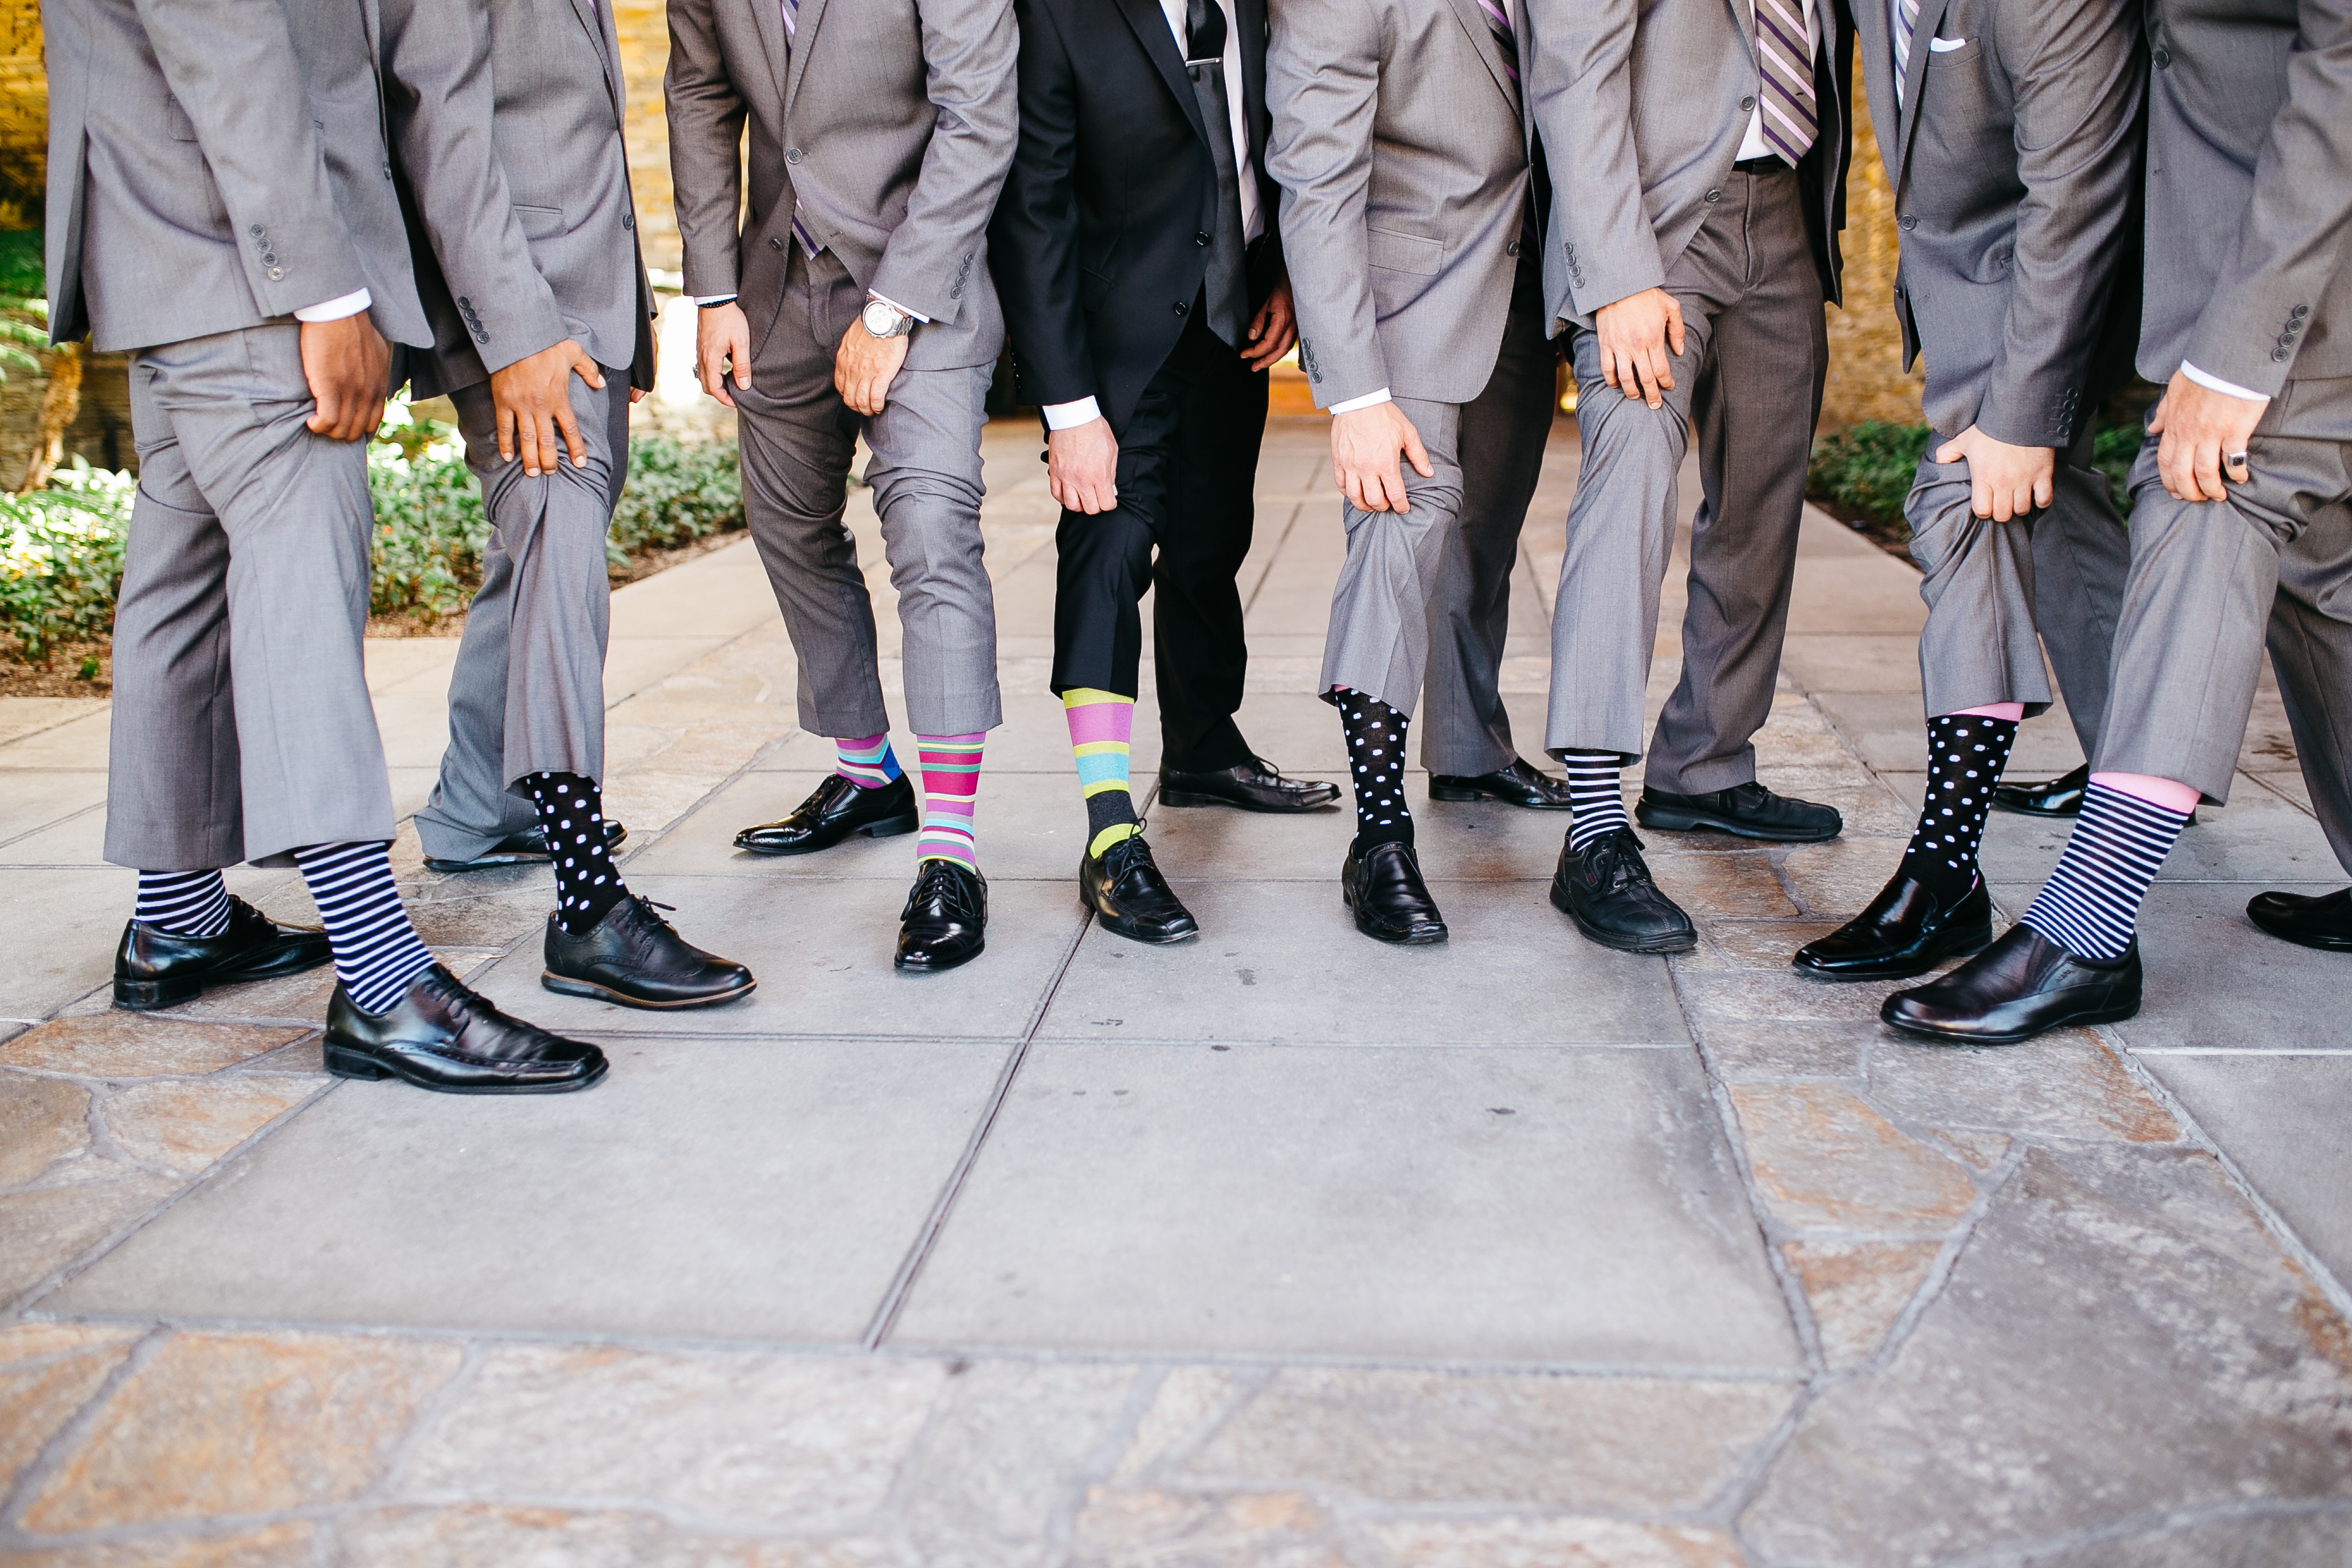 Мужские носки какие лучше для повседневной. Цветные носки с костюмом. Мужские носки с туфлями. Яркие носки с костюмом. Цветные носки мужские под костюм.